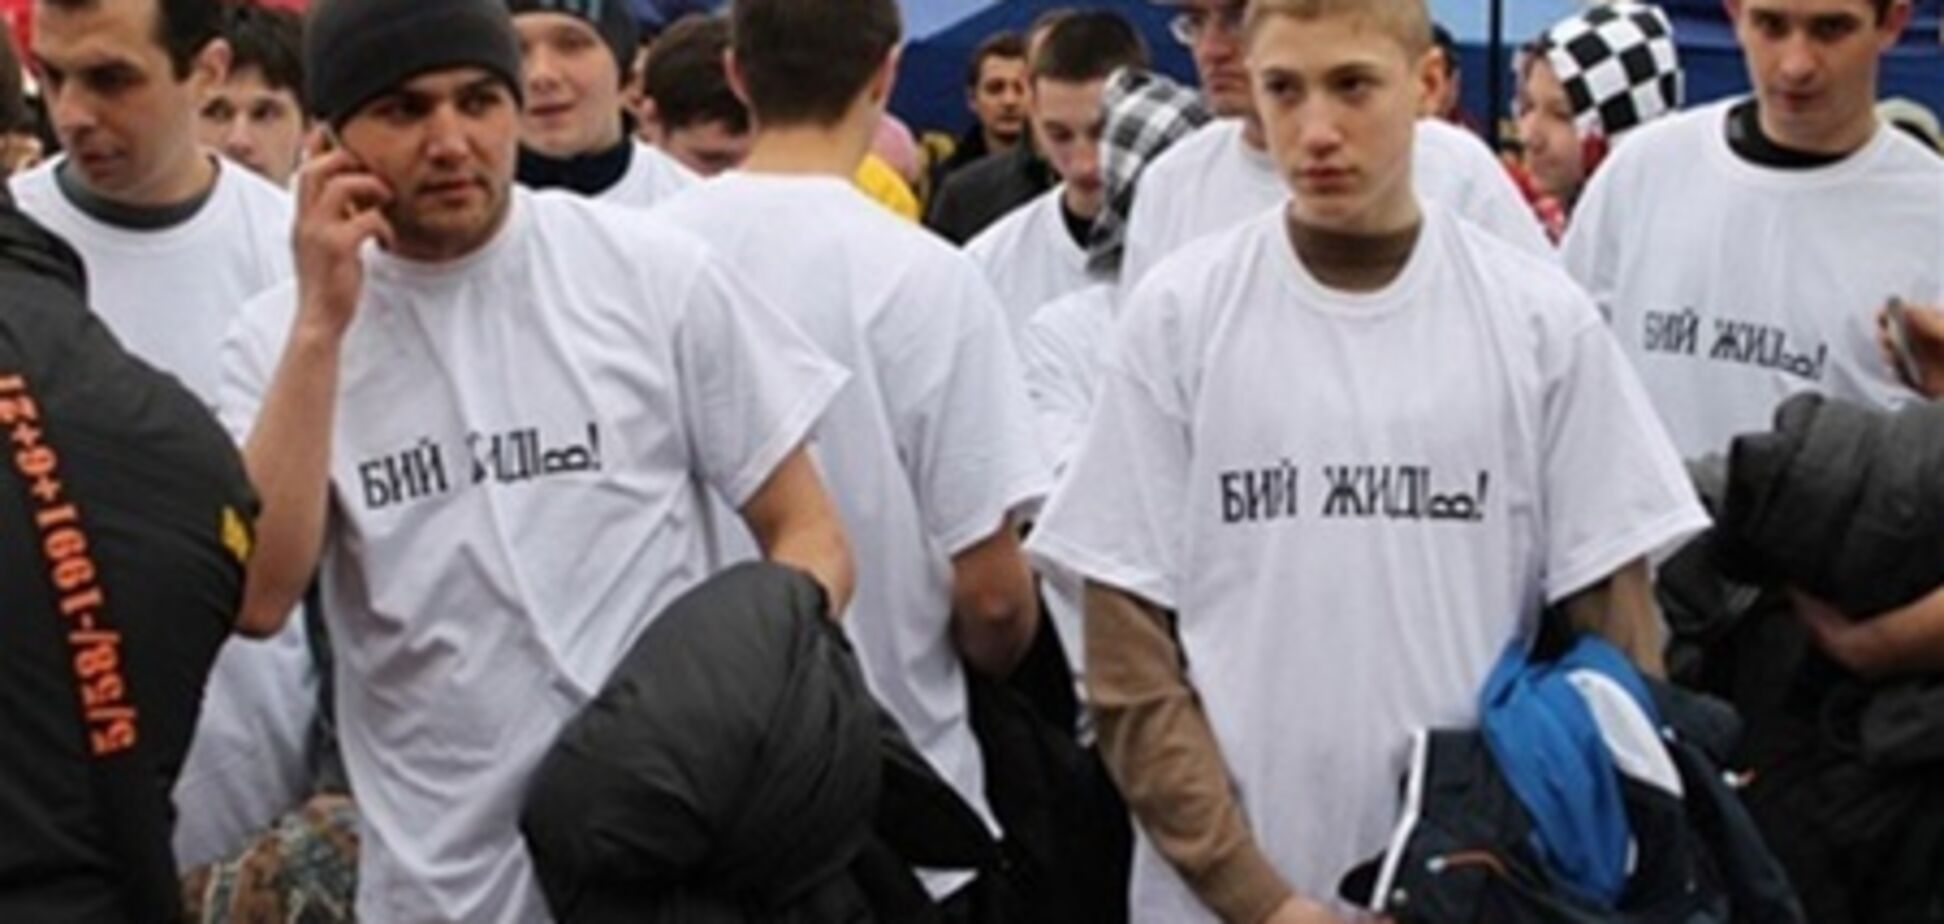 Міліція допитала 150 чоловік по футболкам 'Бий жидів!'